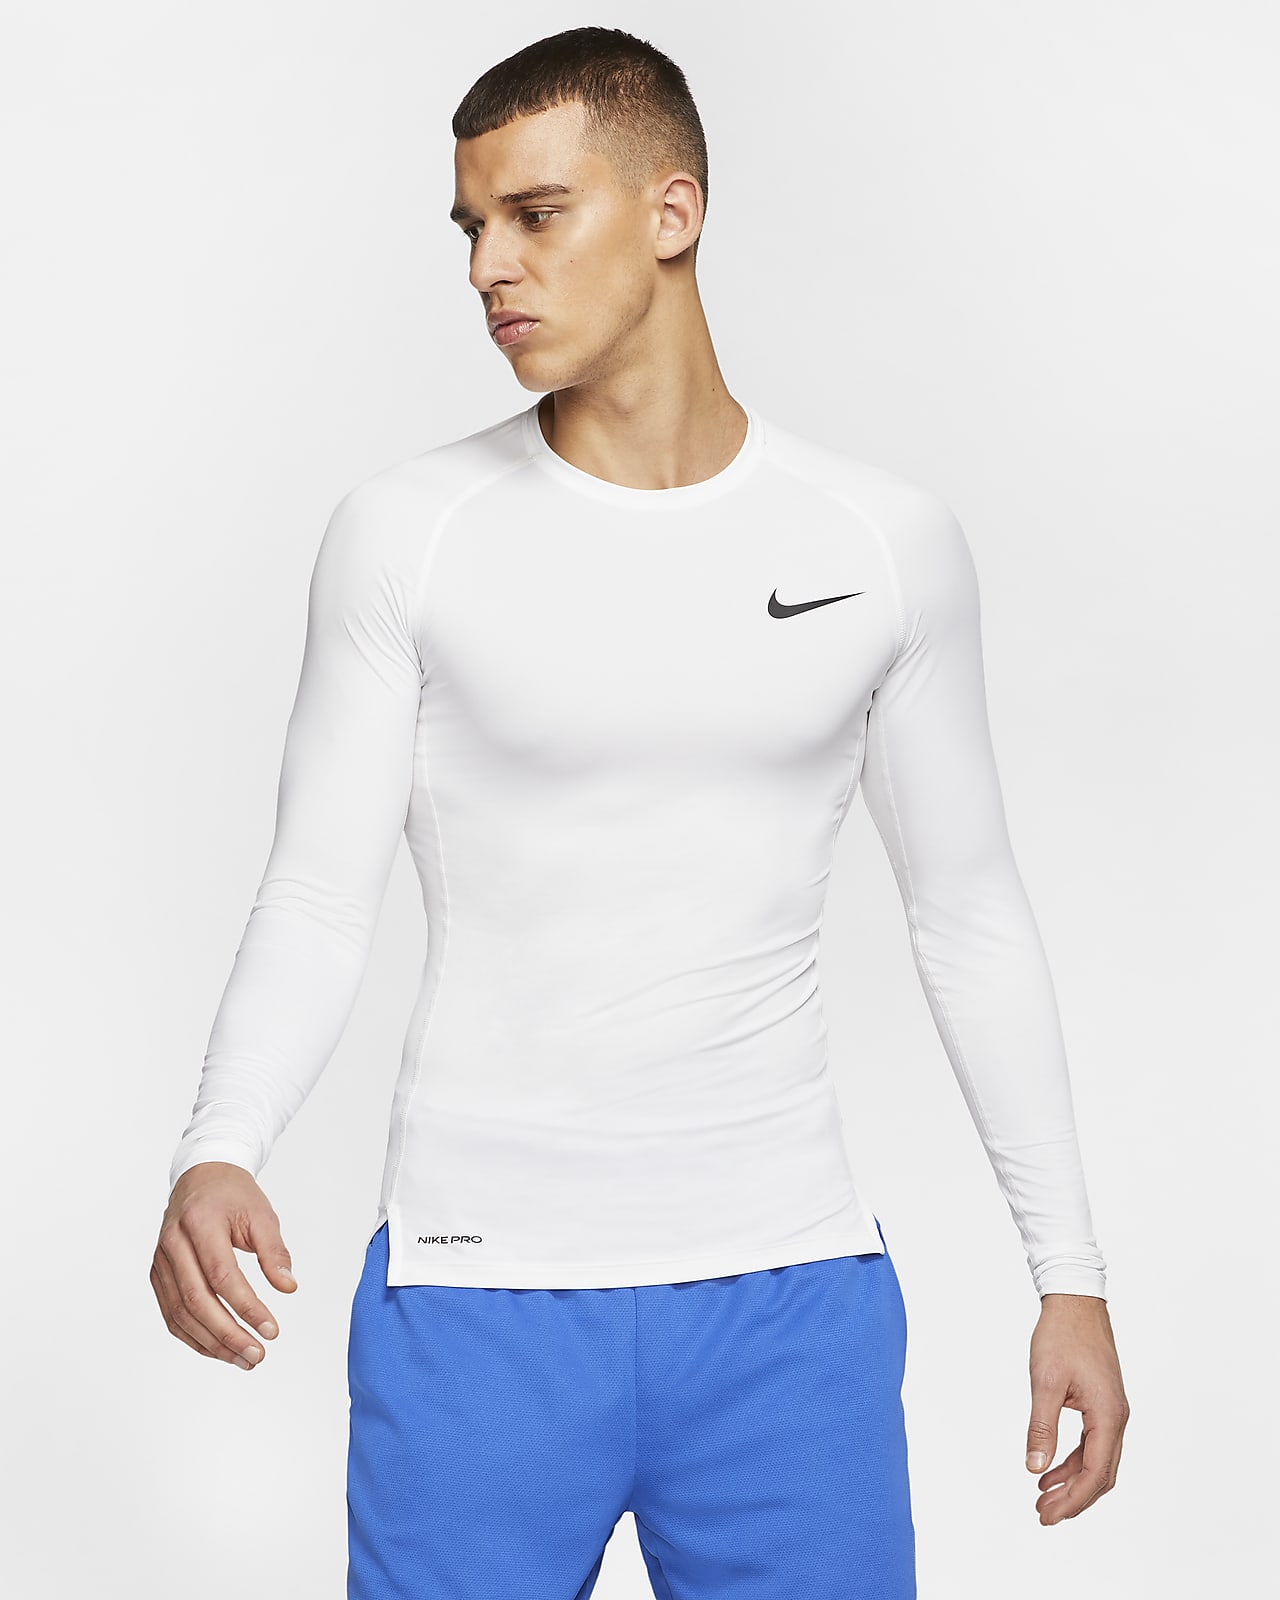 Ανδρική μακρυμάνικη μπλούζα με στενή εφαρμογή Nike Pro